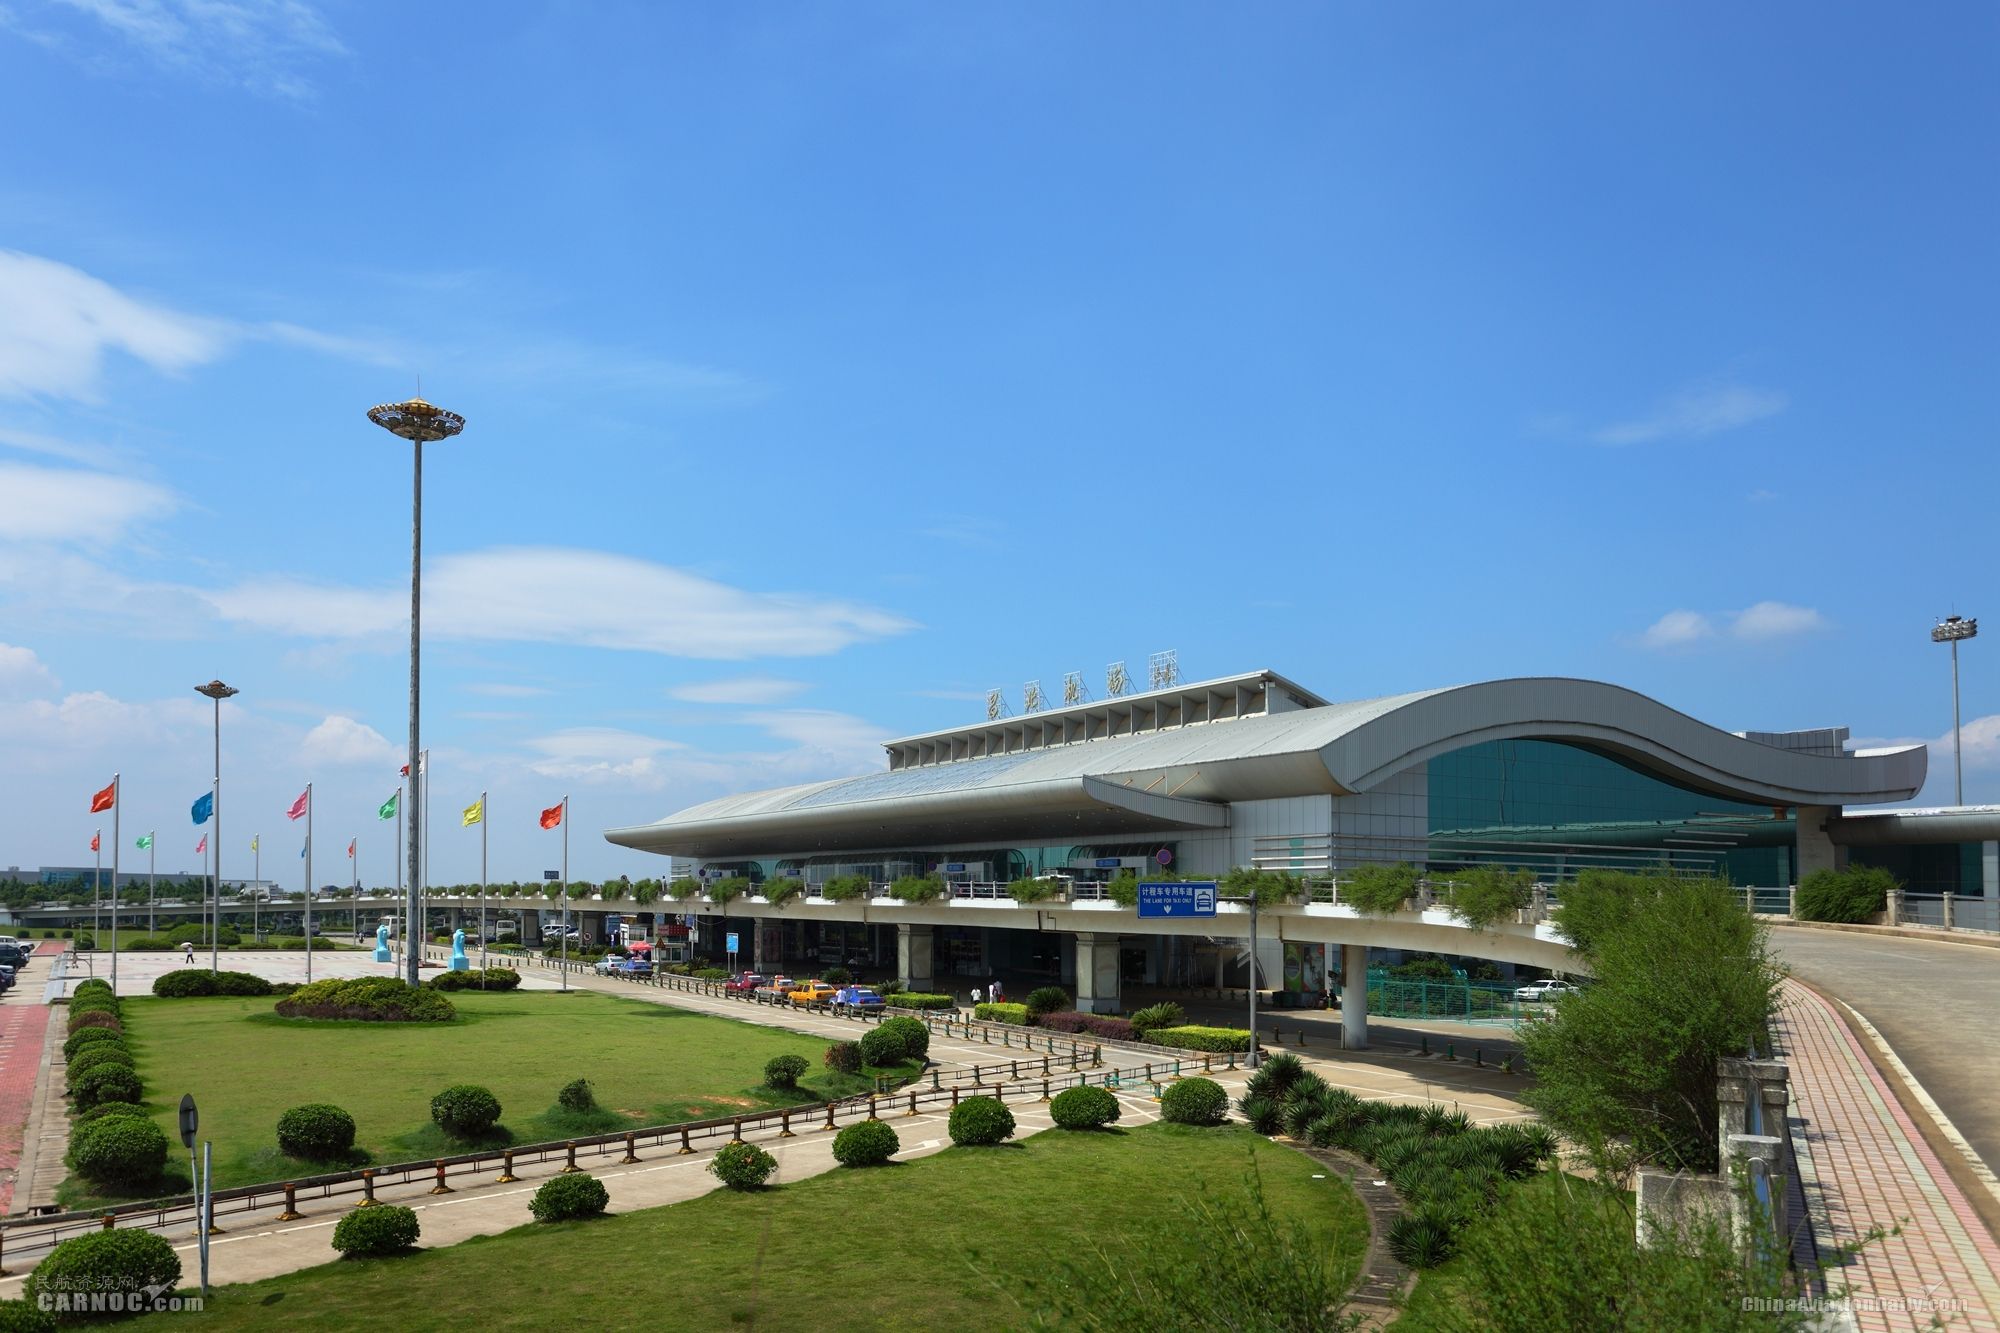 南昌昌北国际机场实现“无缝转机”